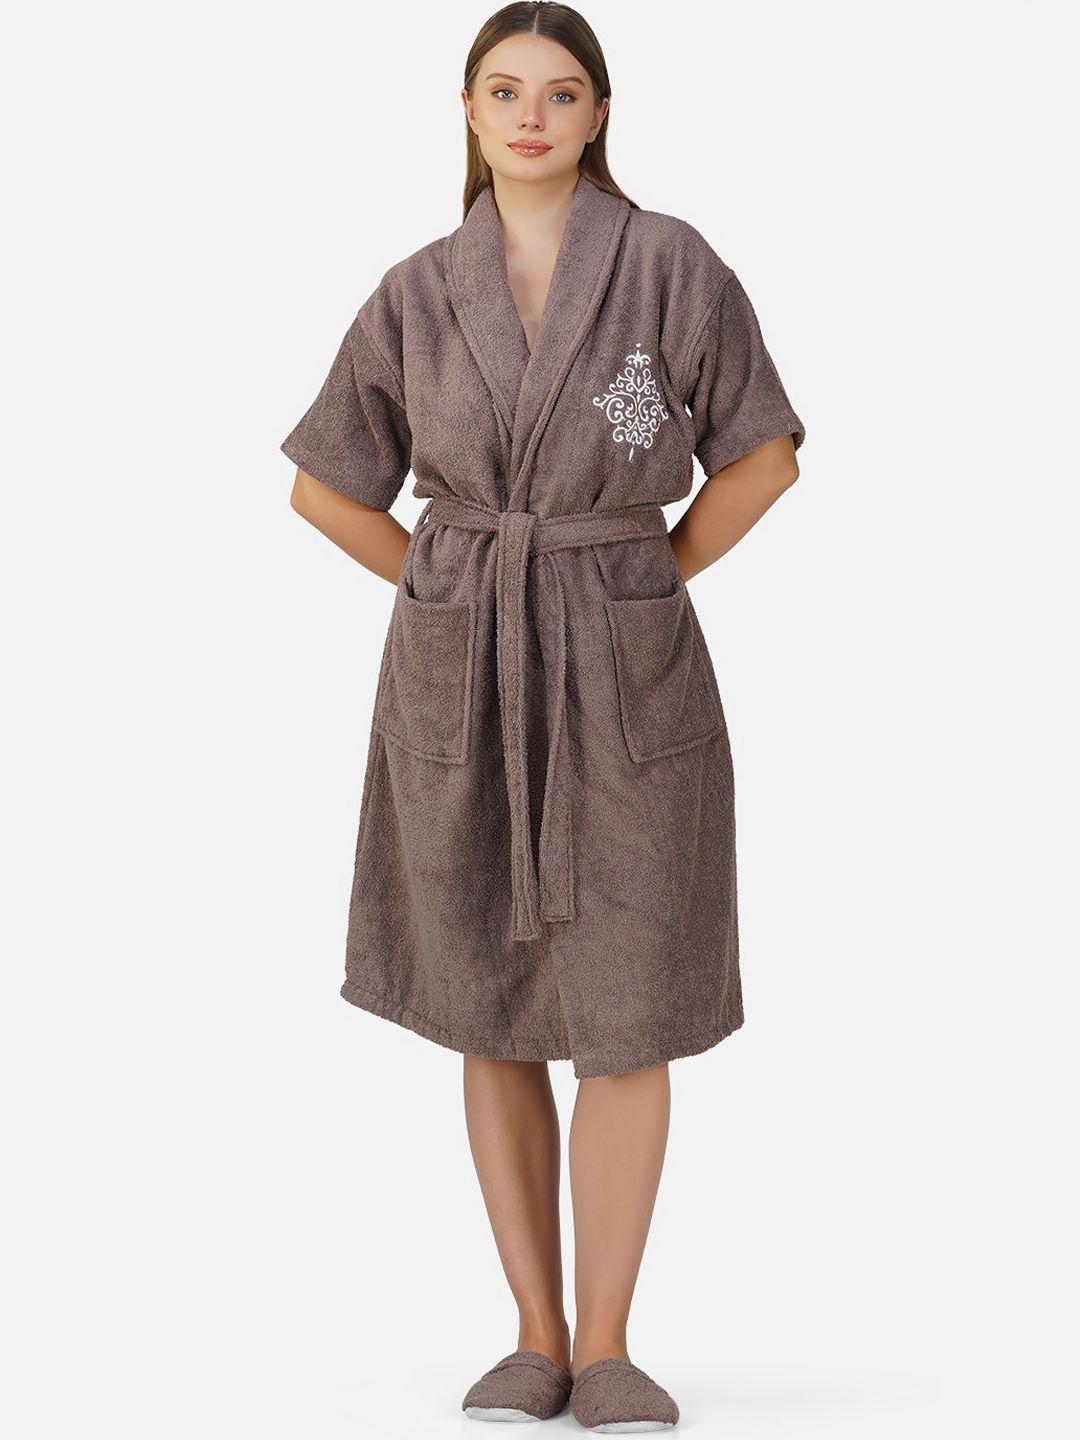 rangoli cotton bath robe